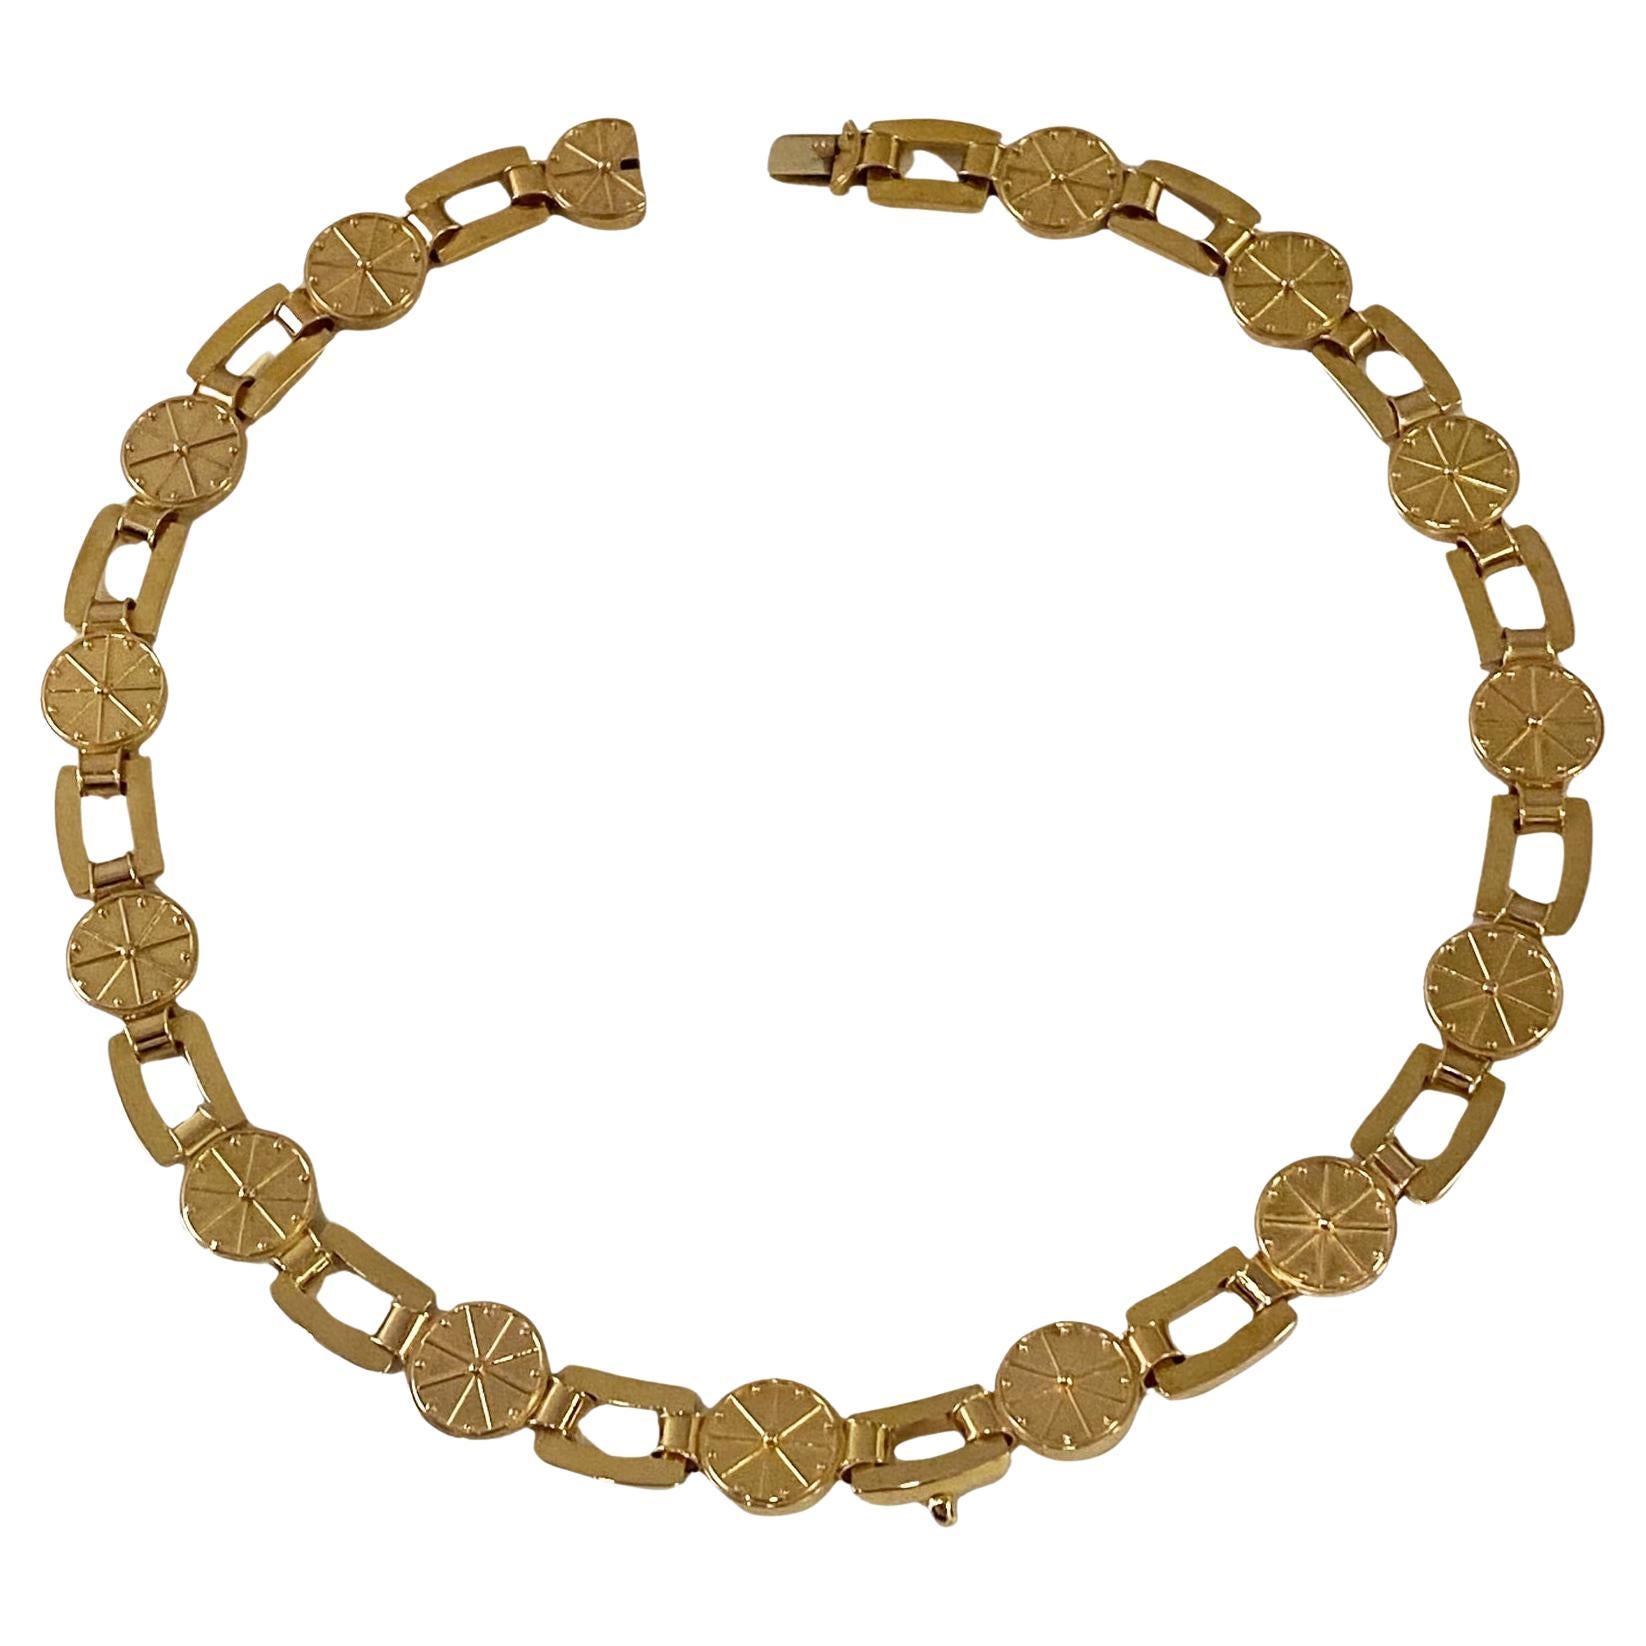 Antique 19th century Gold Necklace English Circa 1860